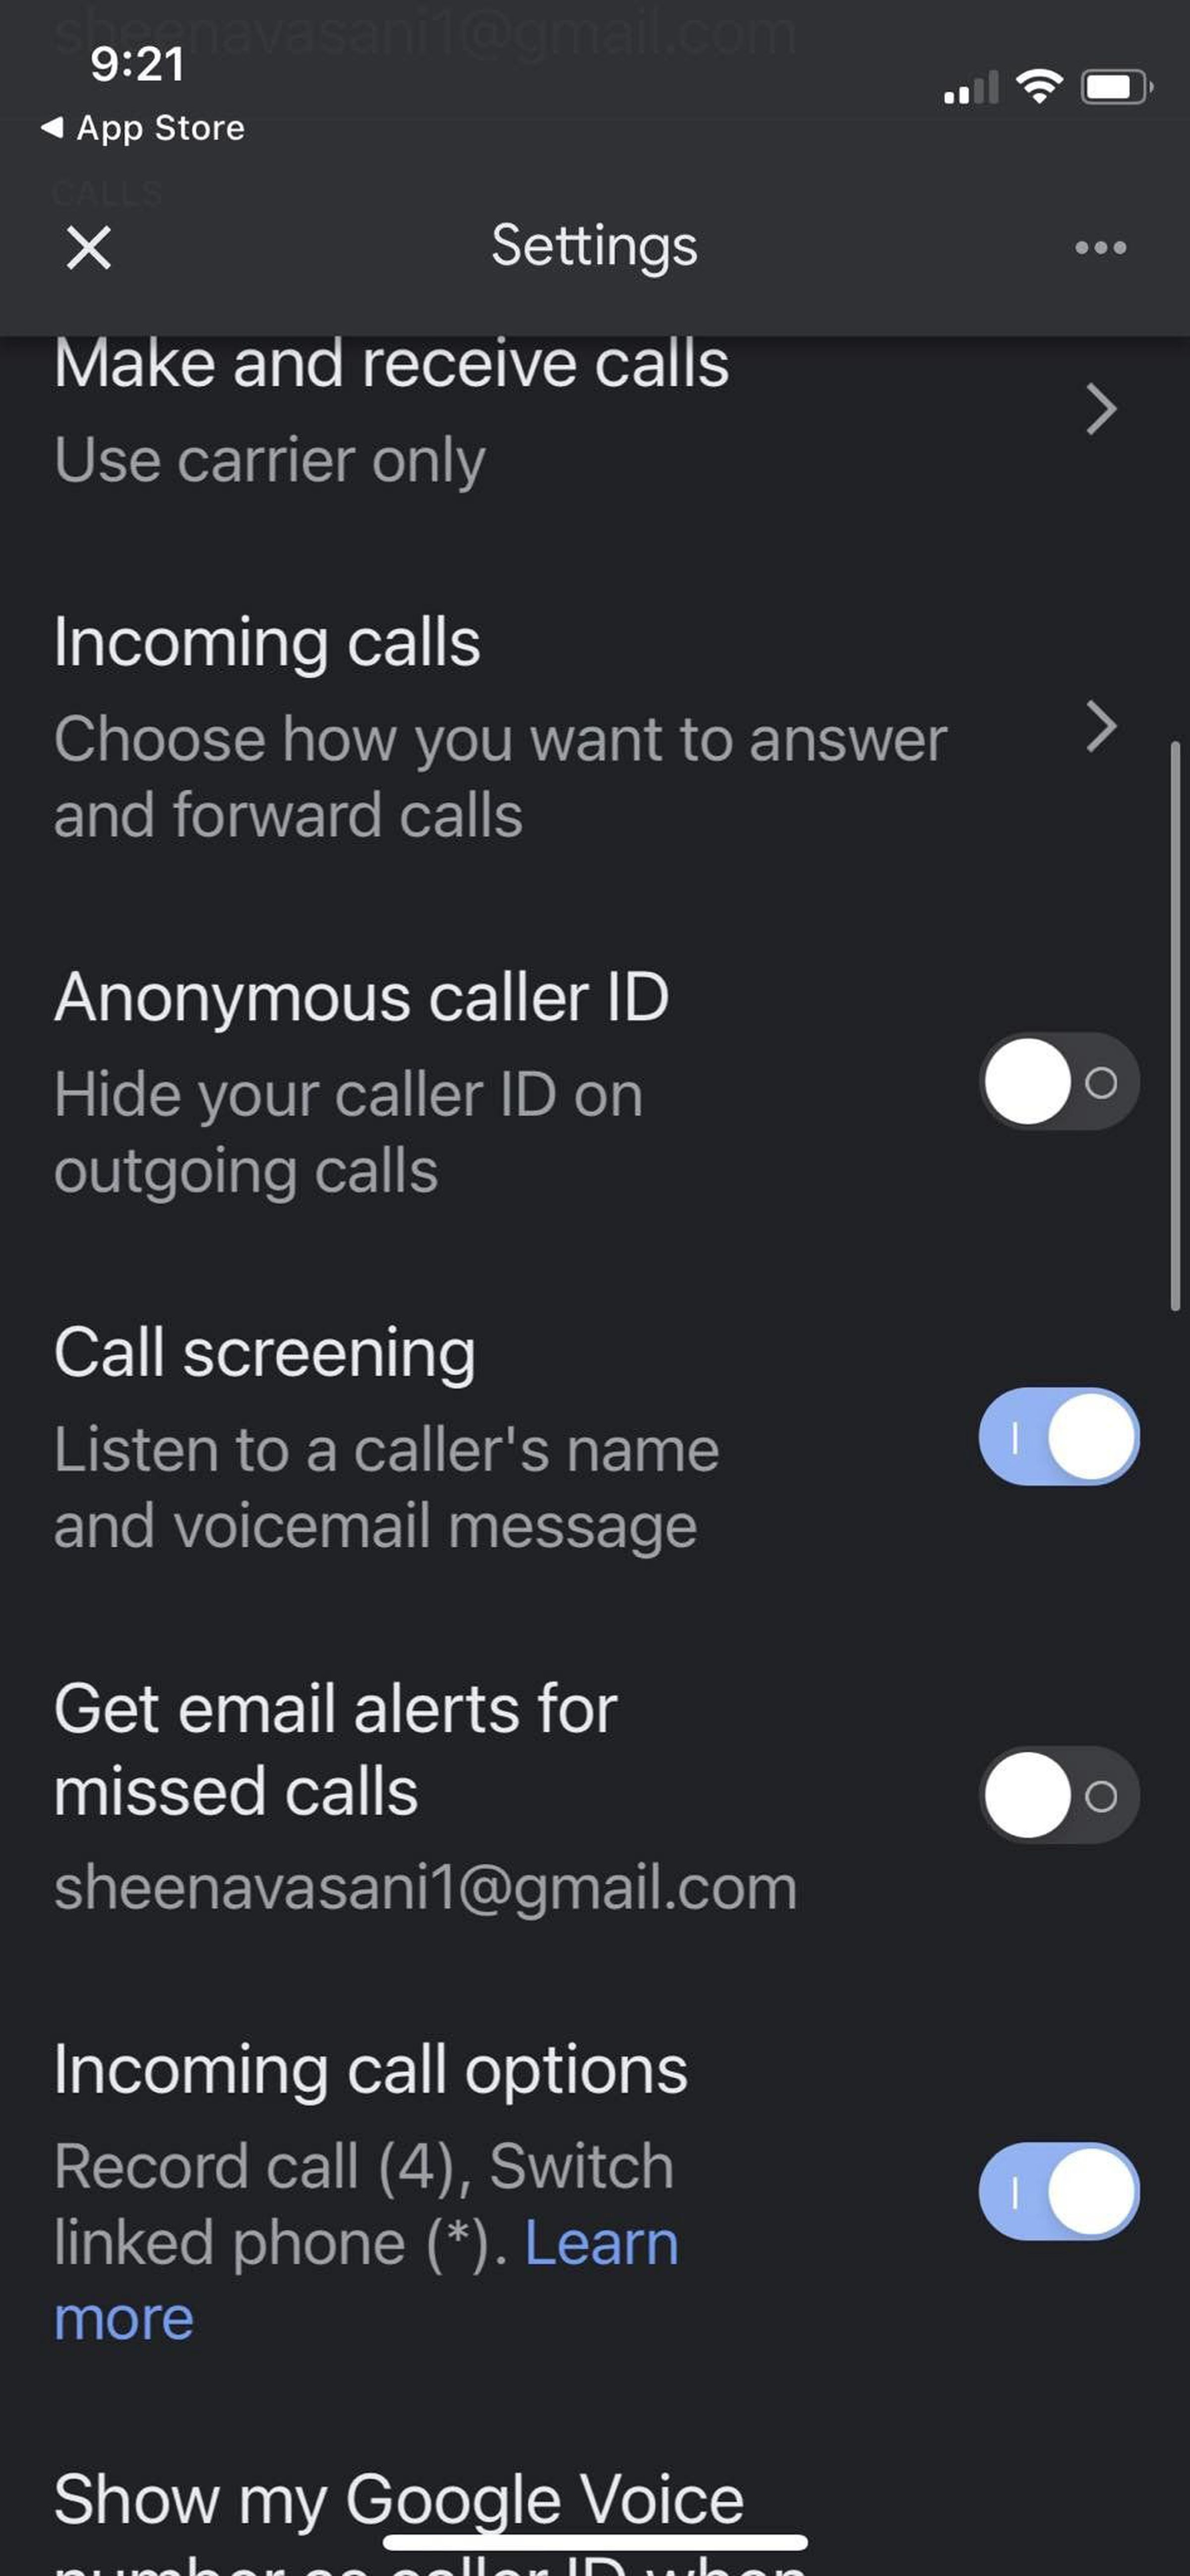 Google Voice settings and calls menu.